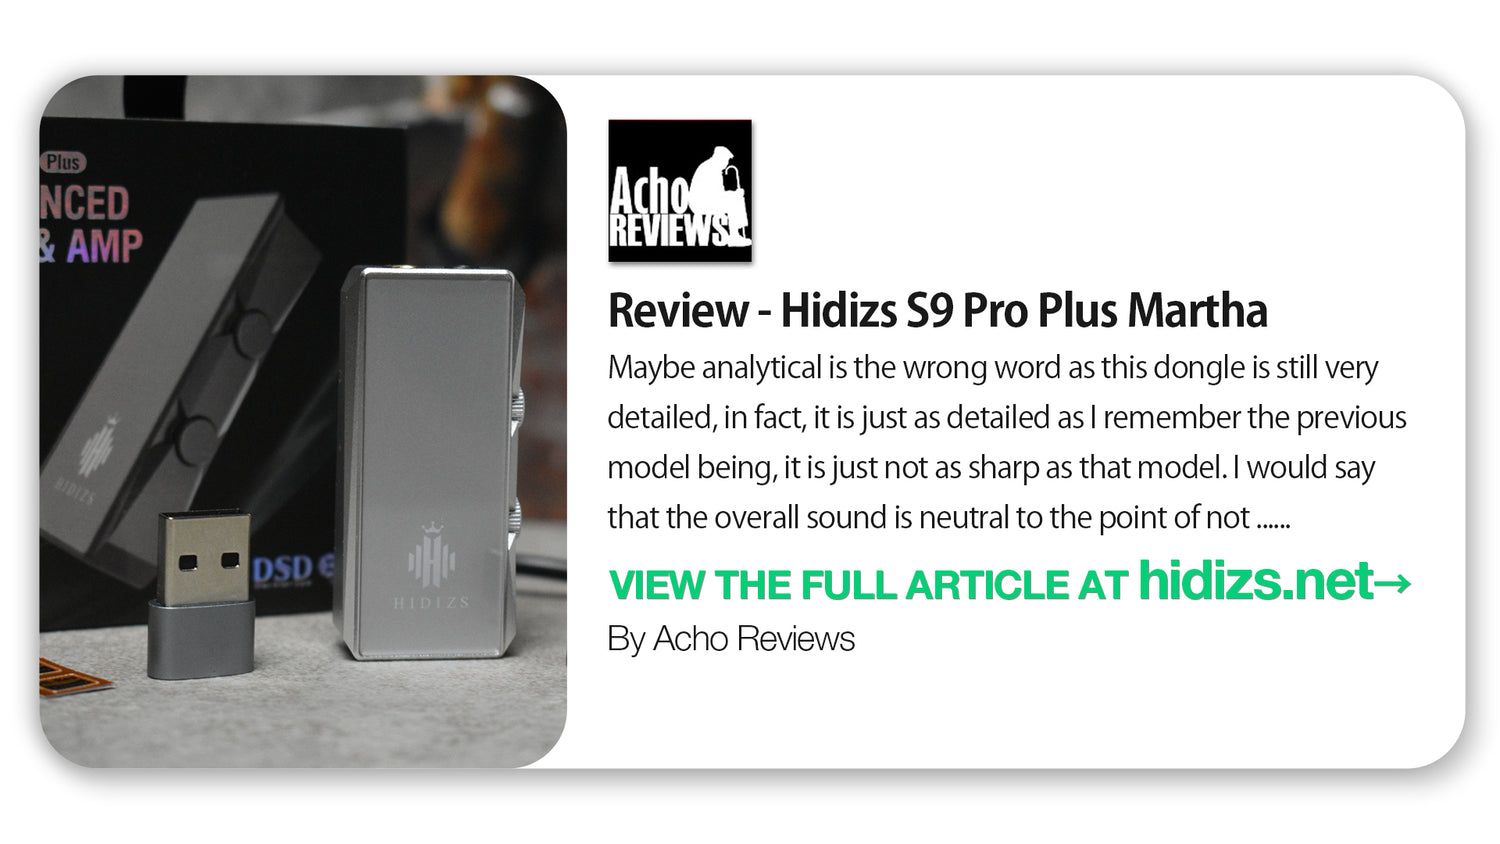 Hidizs S9 Pro Plus Martha Review - Acho Reviews